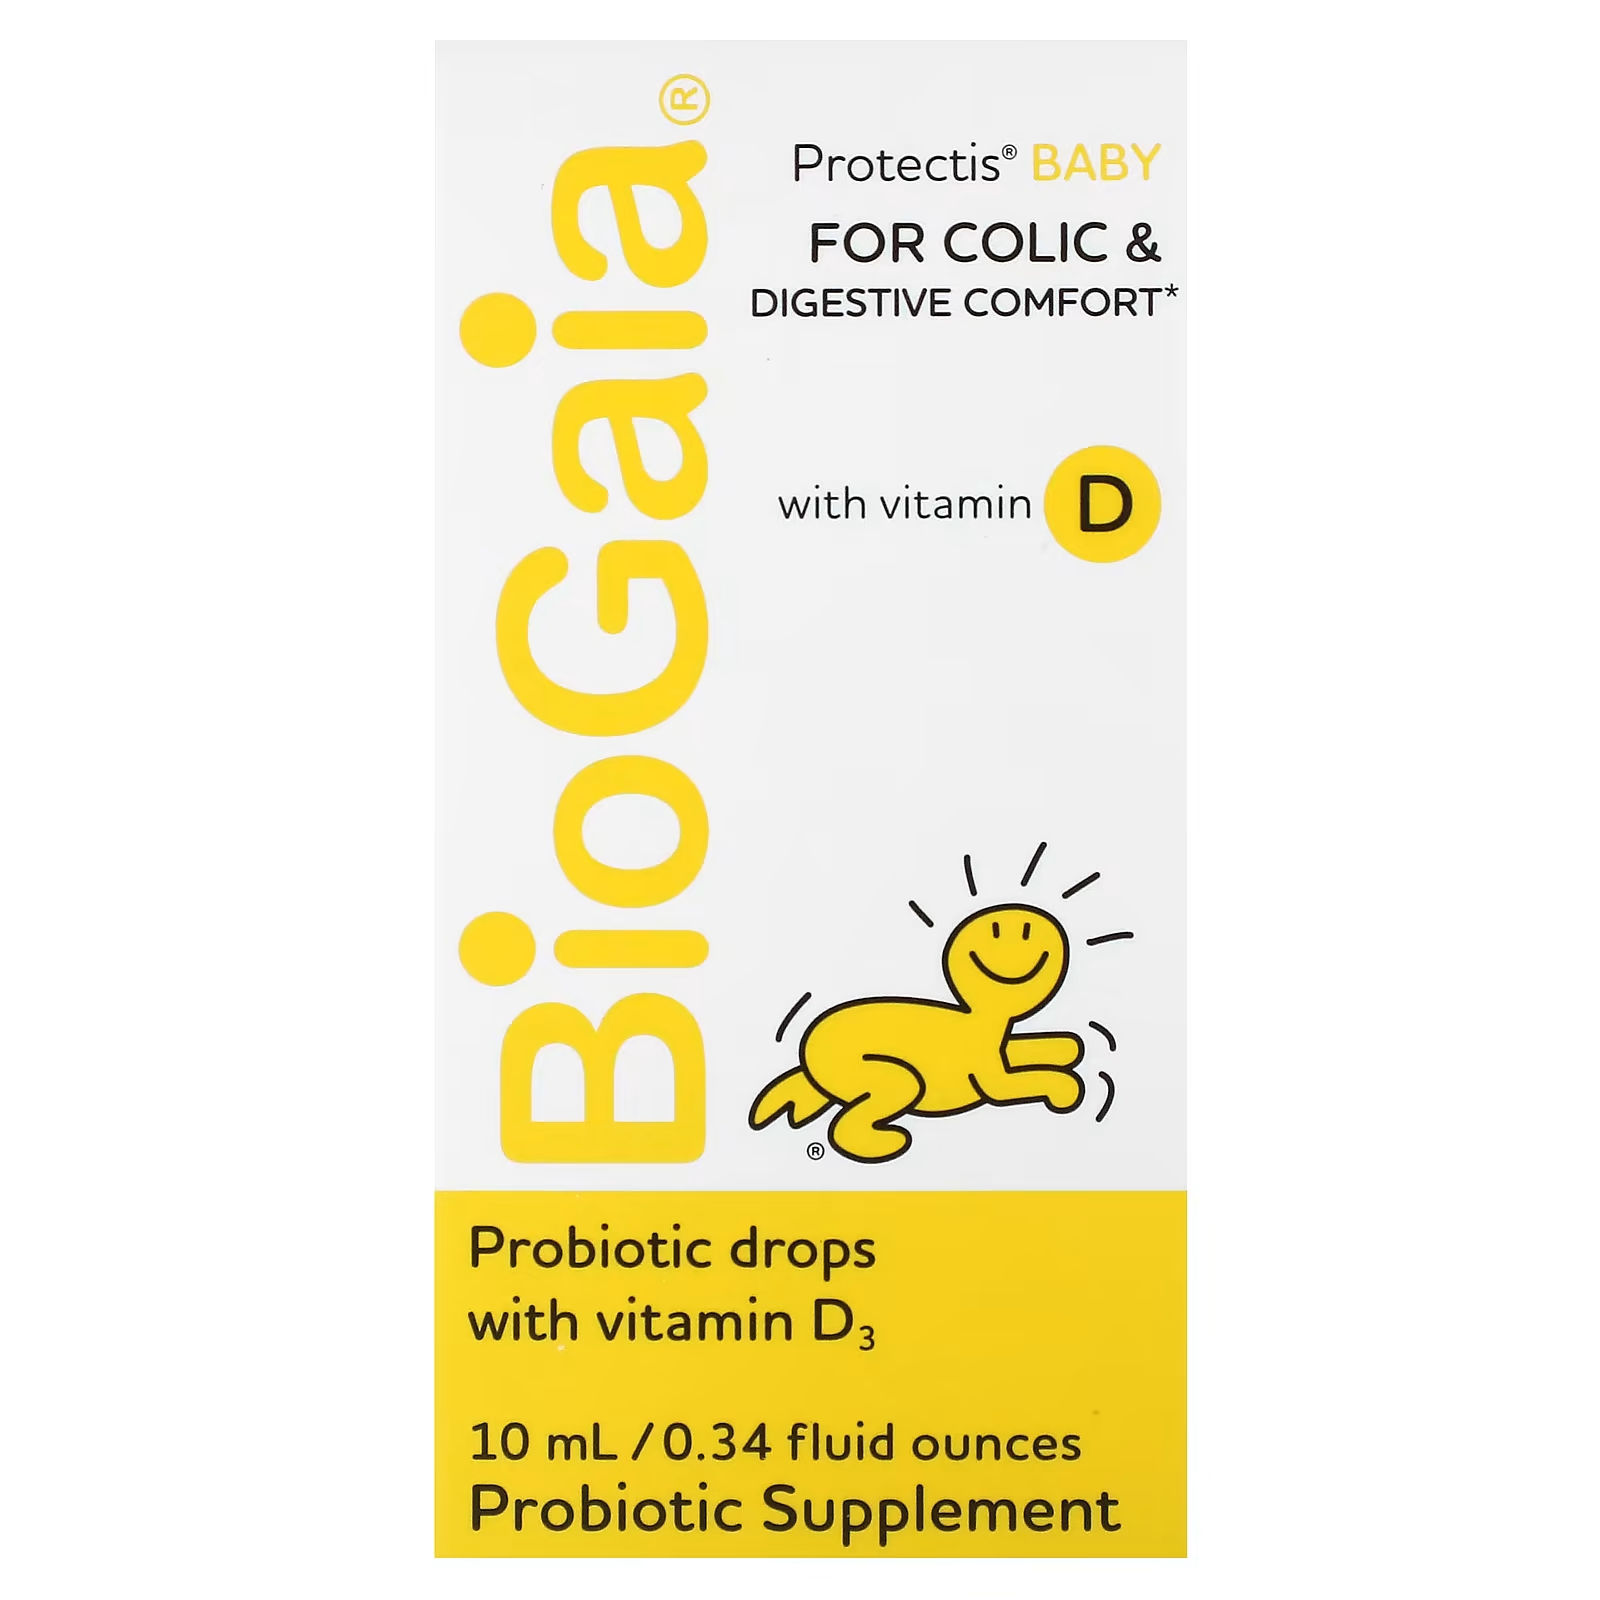 BioGaia Protectis Детские пробиотические капли с витамином D, 0,34 жидких унции (10 мл) biogaia protectis детские капли против колик и для комфортного пищеварения с витамином d 10 мл 0 34 жидк унции